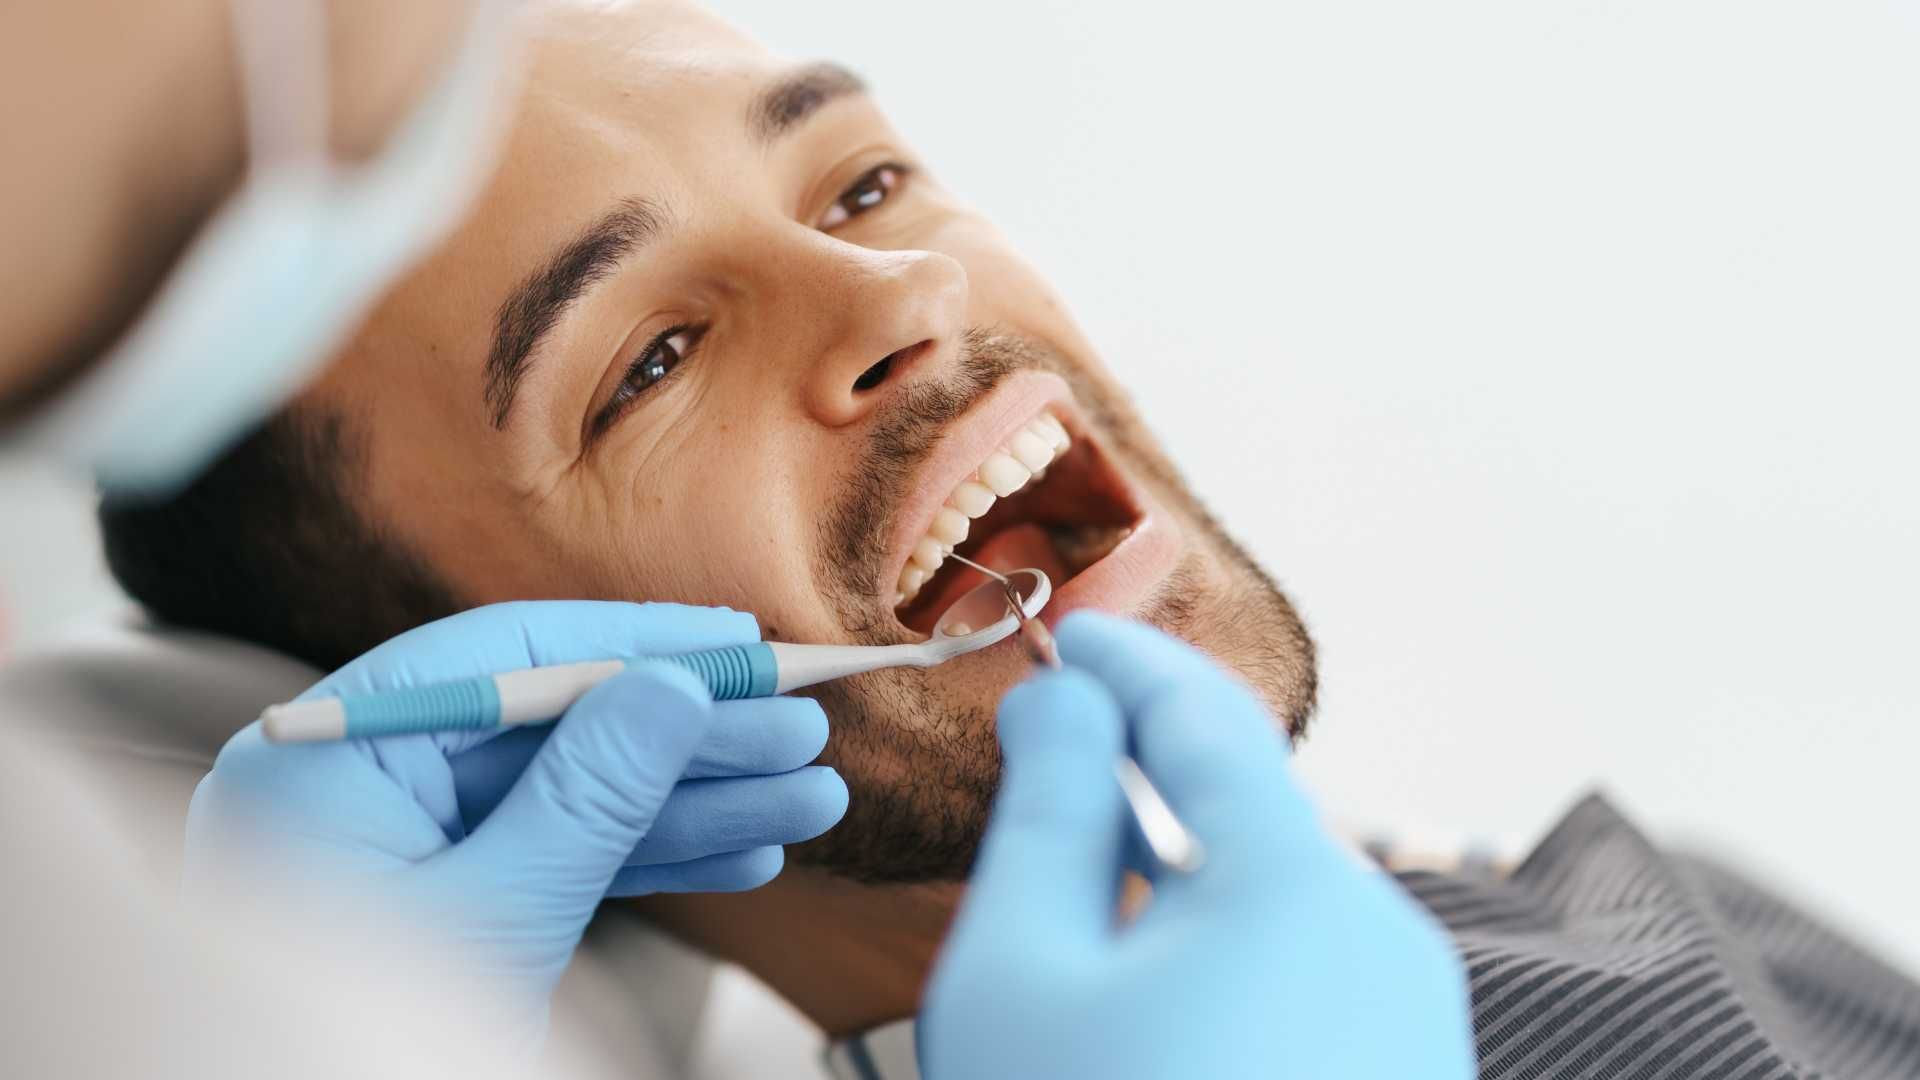 پرکردن دندان 1 سطحی با ماده کامپوزیت سوئیسی